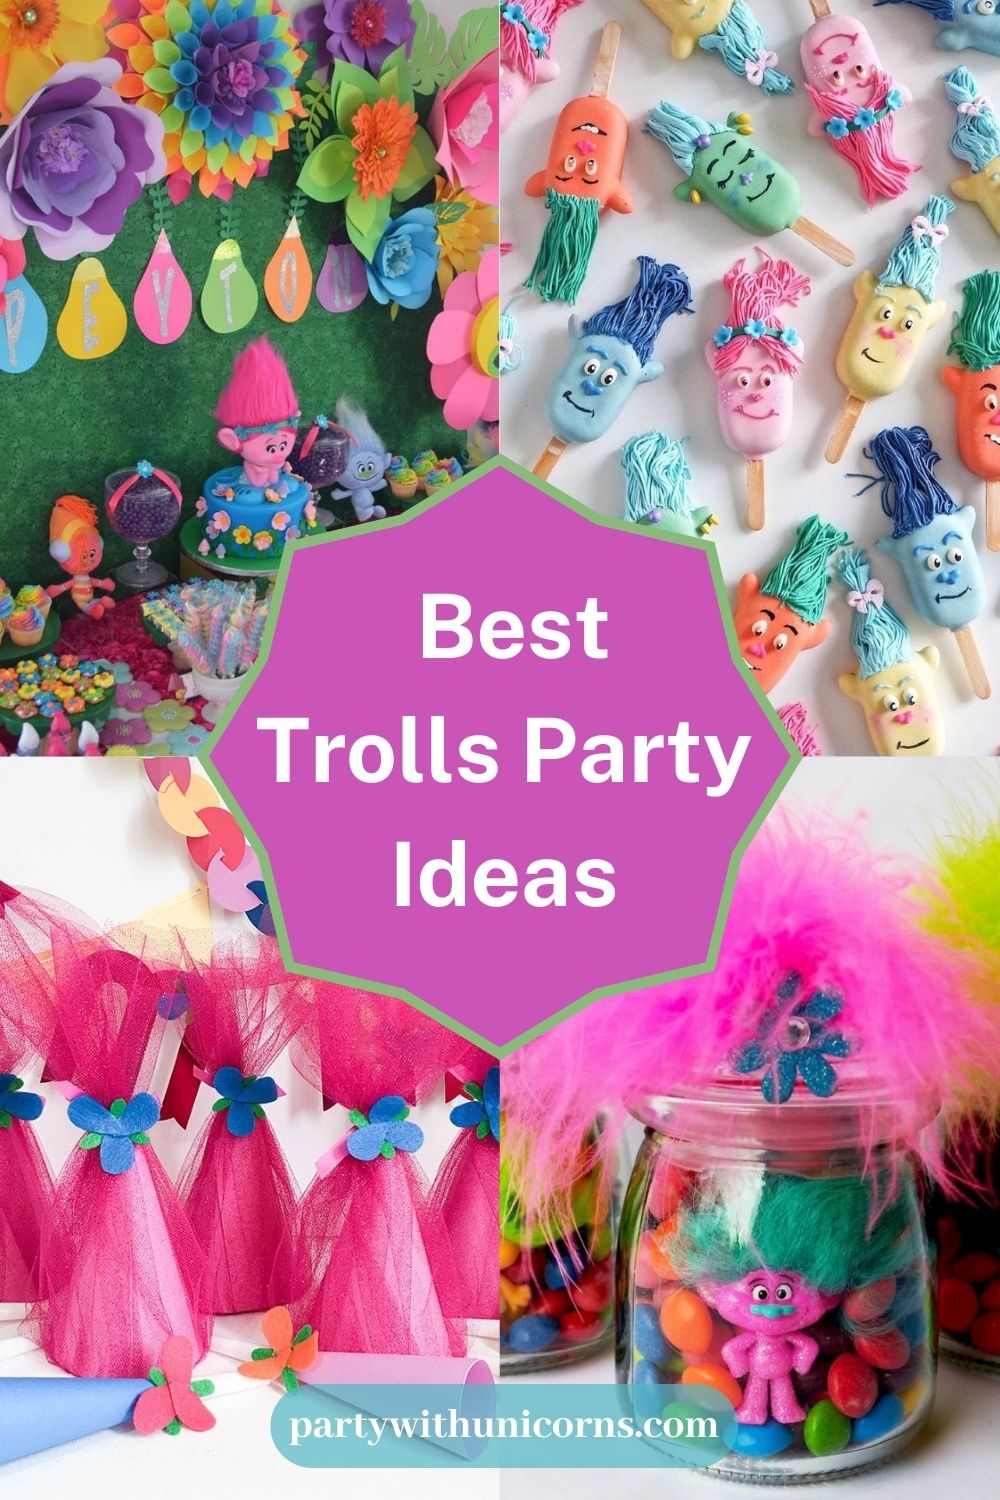 Best Trolls Party Ideas